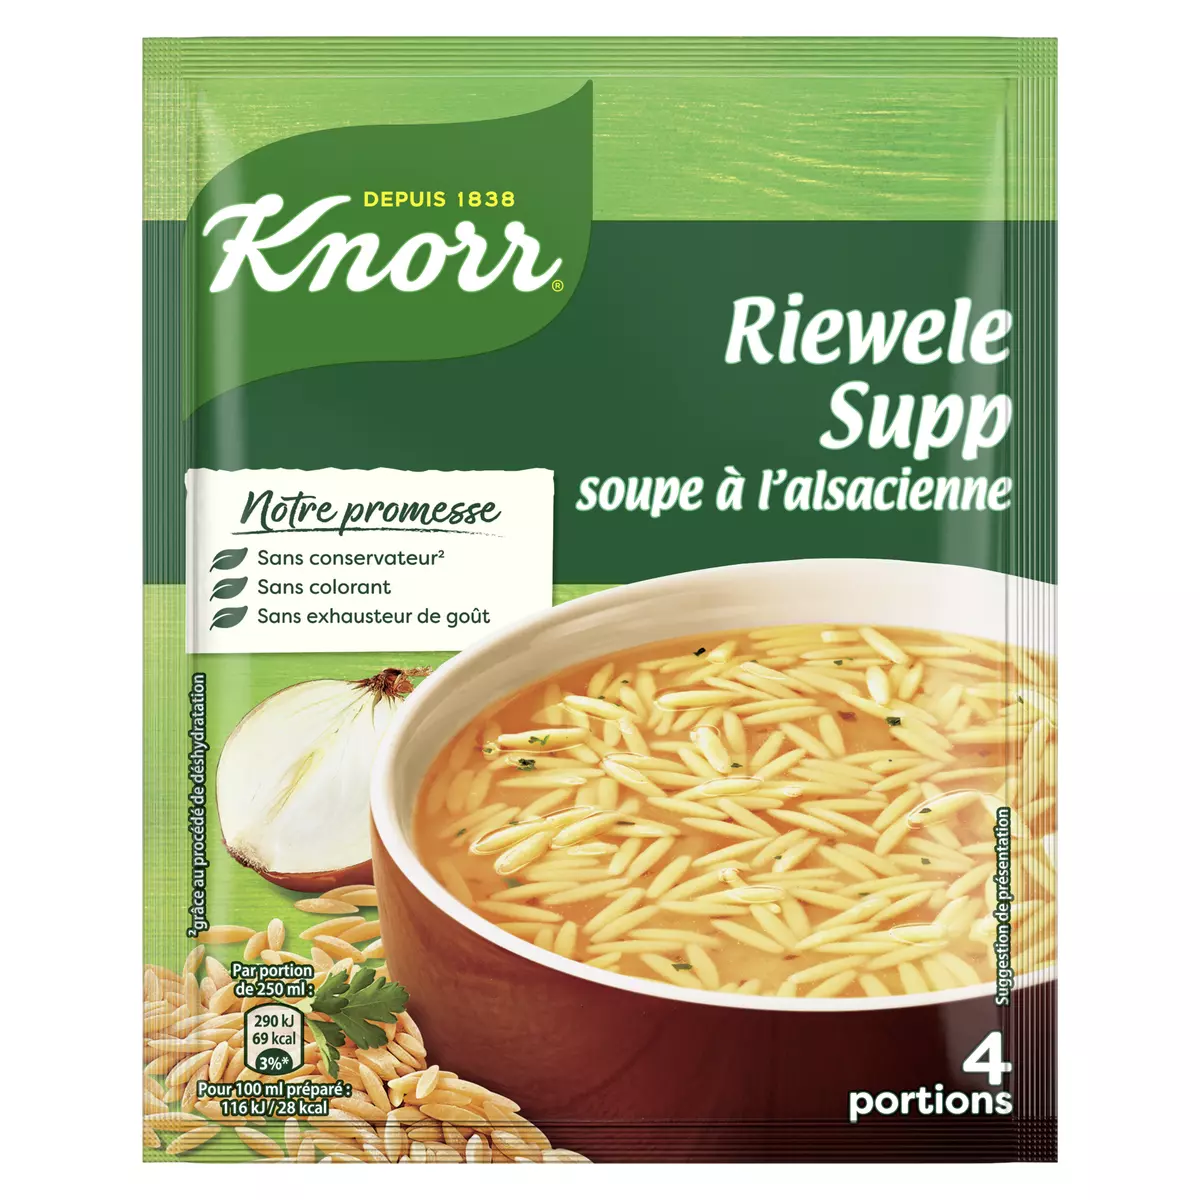 KNORR Soupe déshydratée à l'alsacienne riewele supp 4 portions 74g